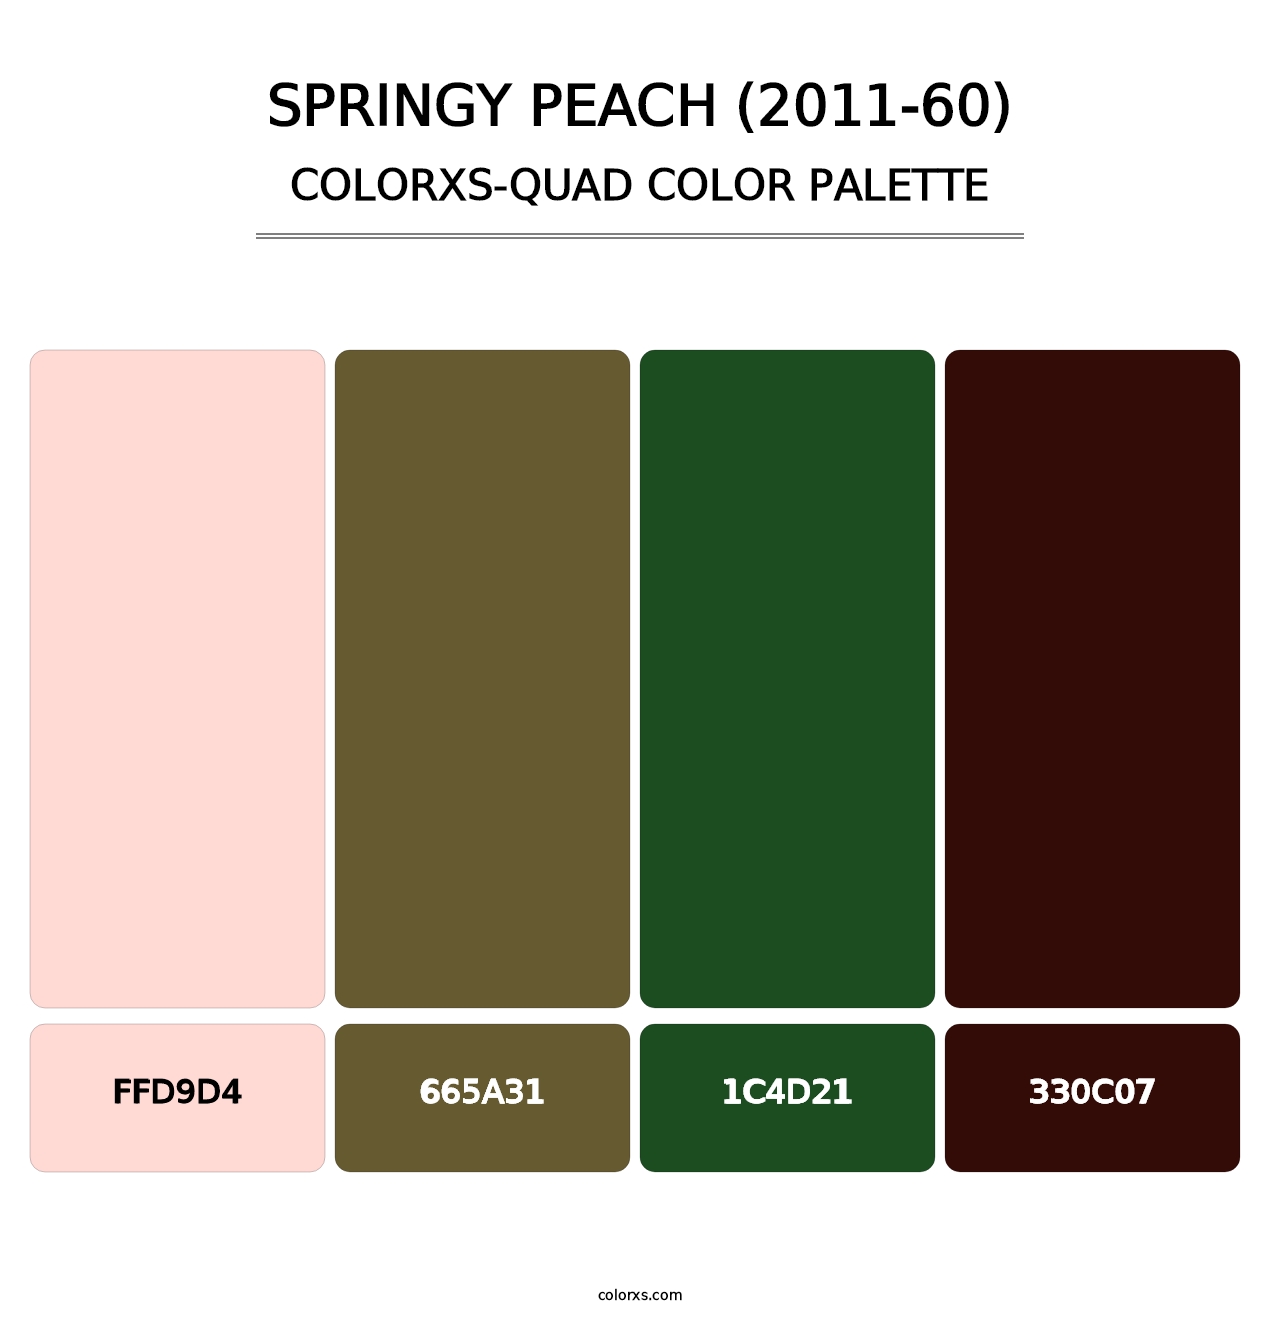 Springy Peach (2011-60) - Colorxs Quad Palette